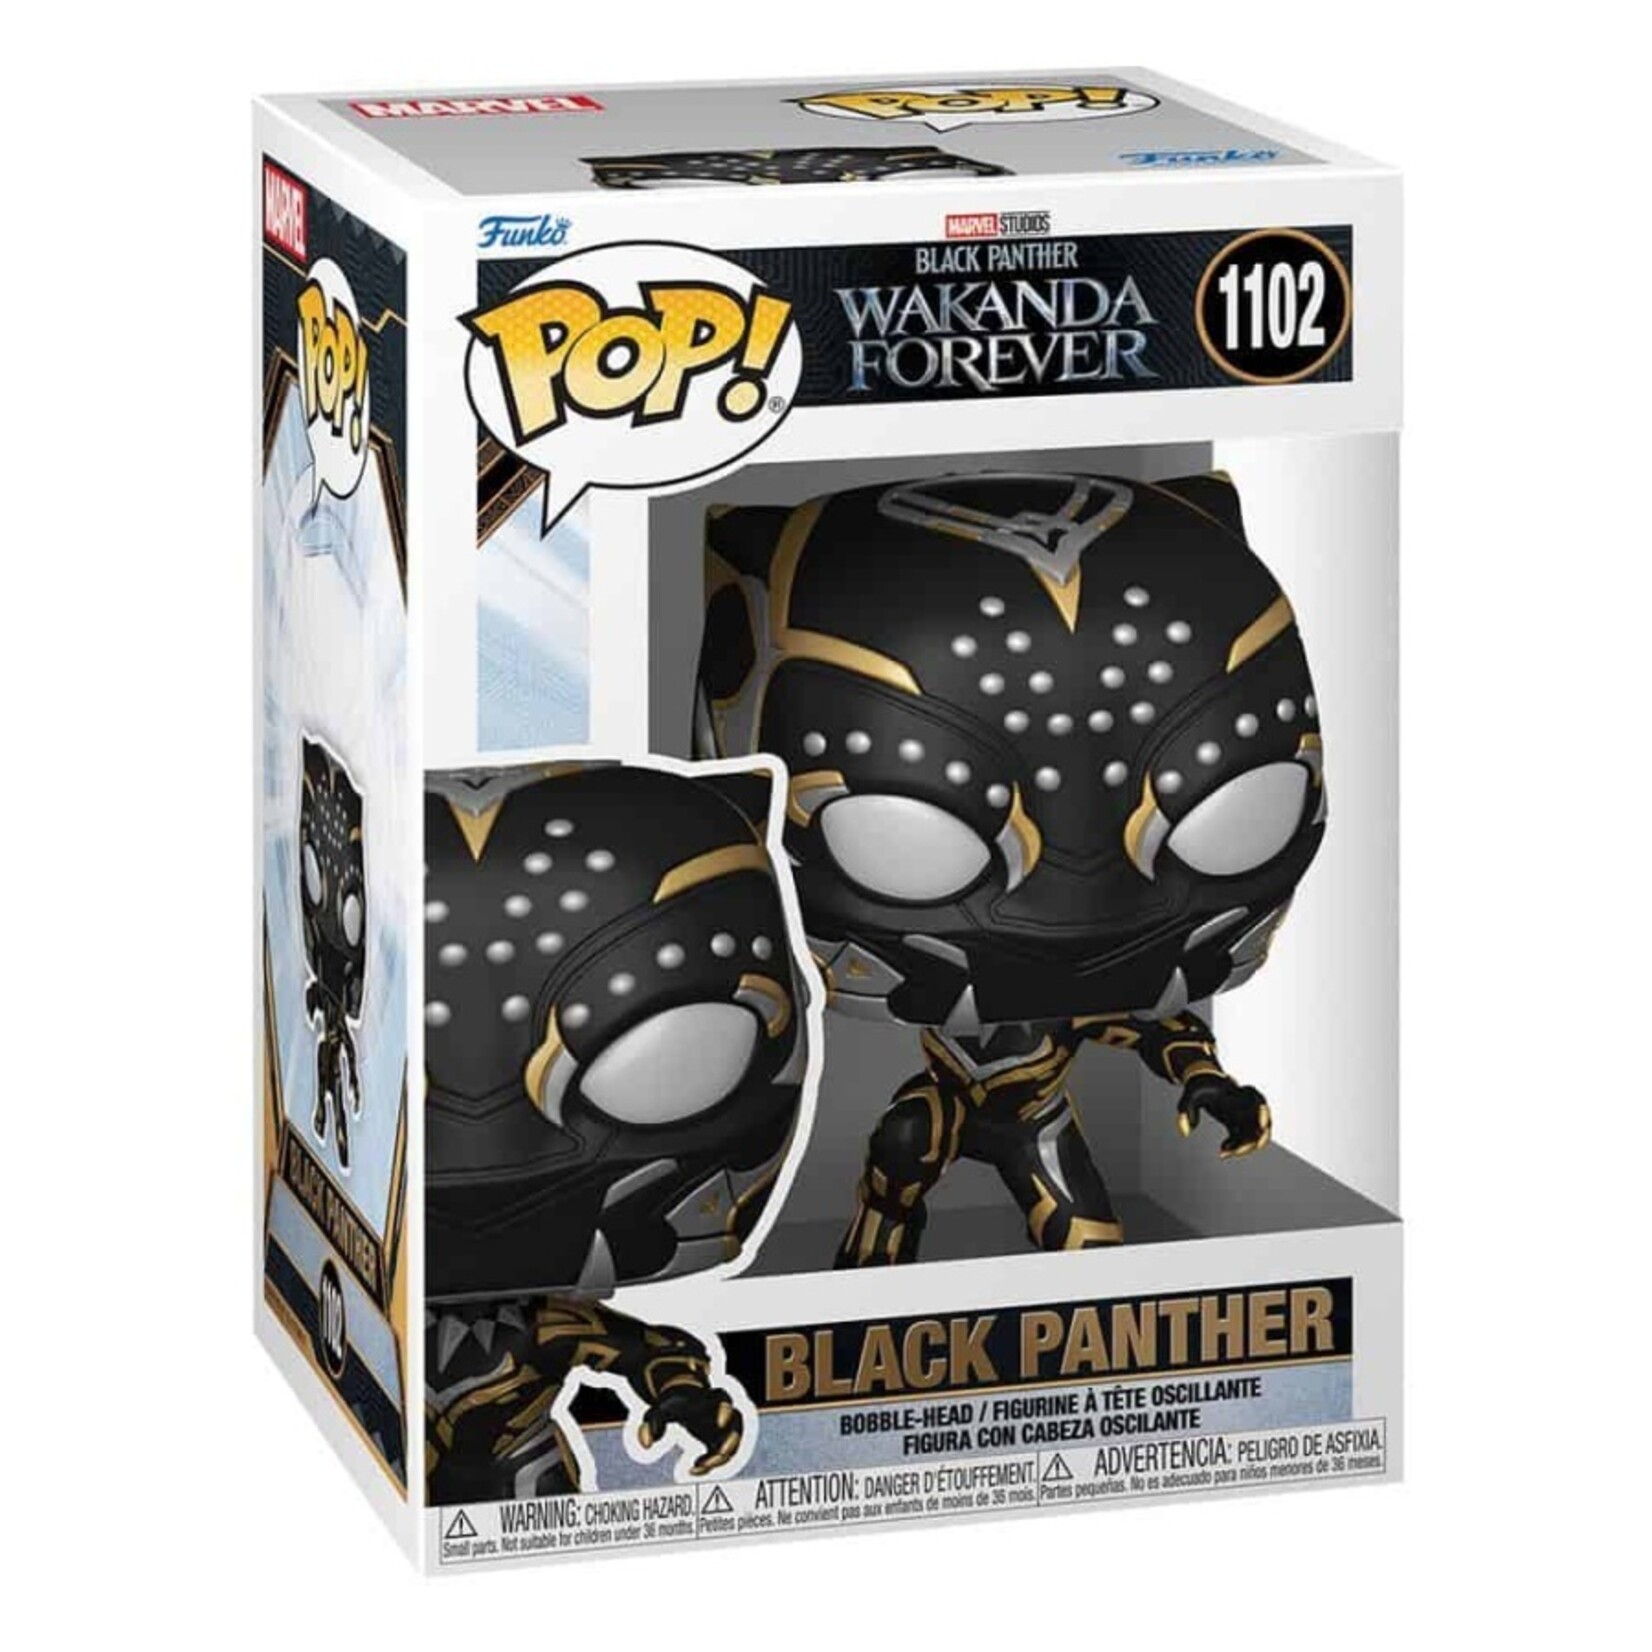 : BLACK PANTHER WAKANDA FOREVER 1102 - Black Panther